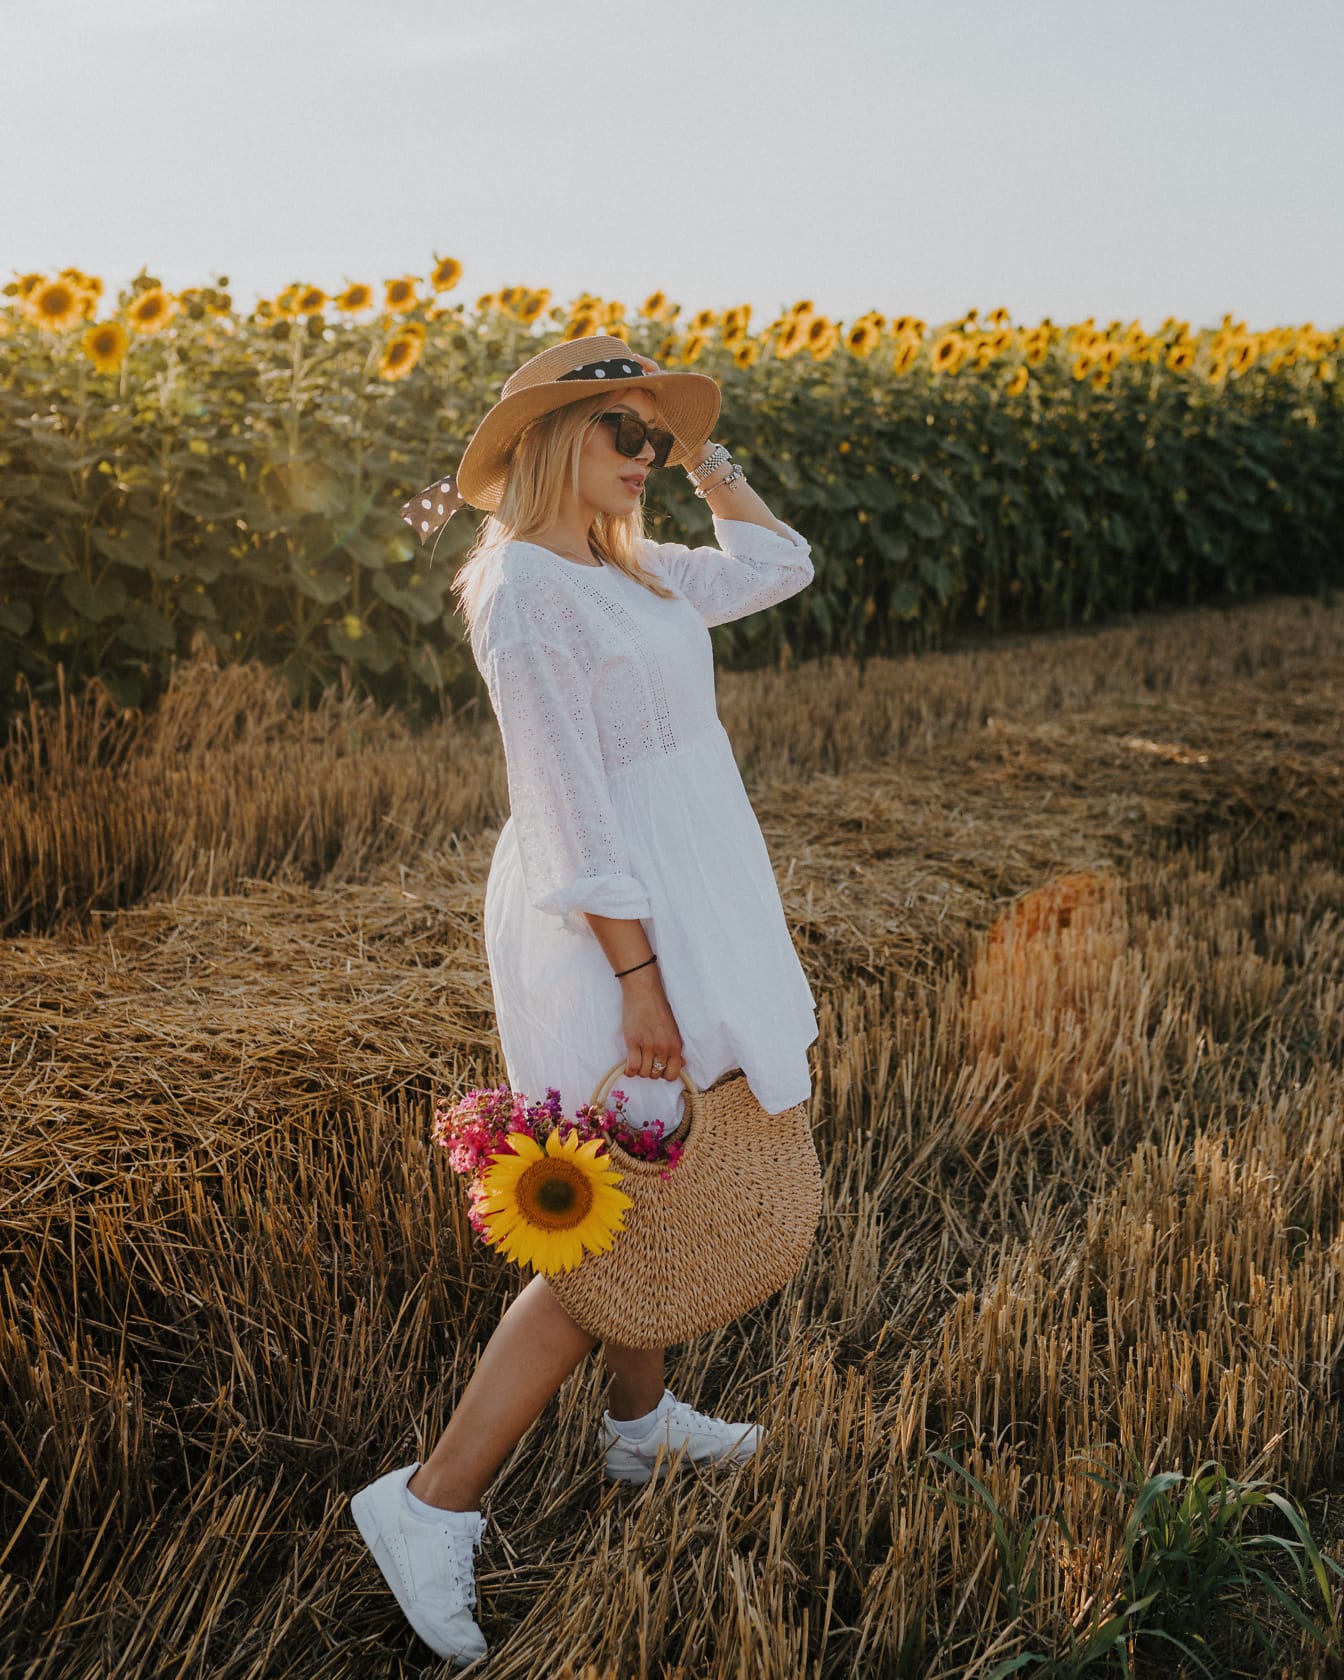 Người phụ nữ trên cánh đồng lúa mì trong chiếc váy trắng và đội mũ cầm một chiếc túi và hoa